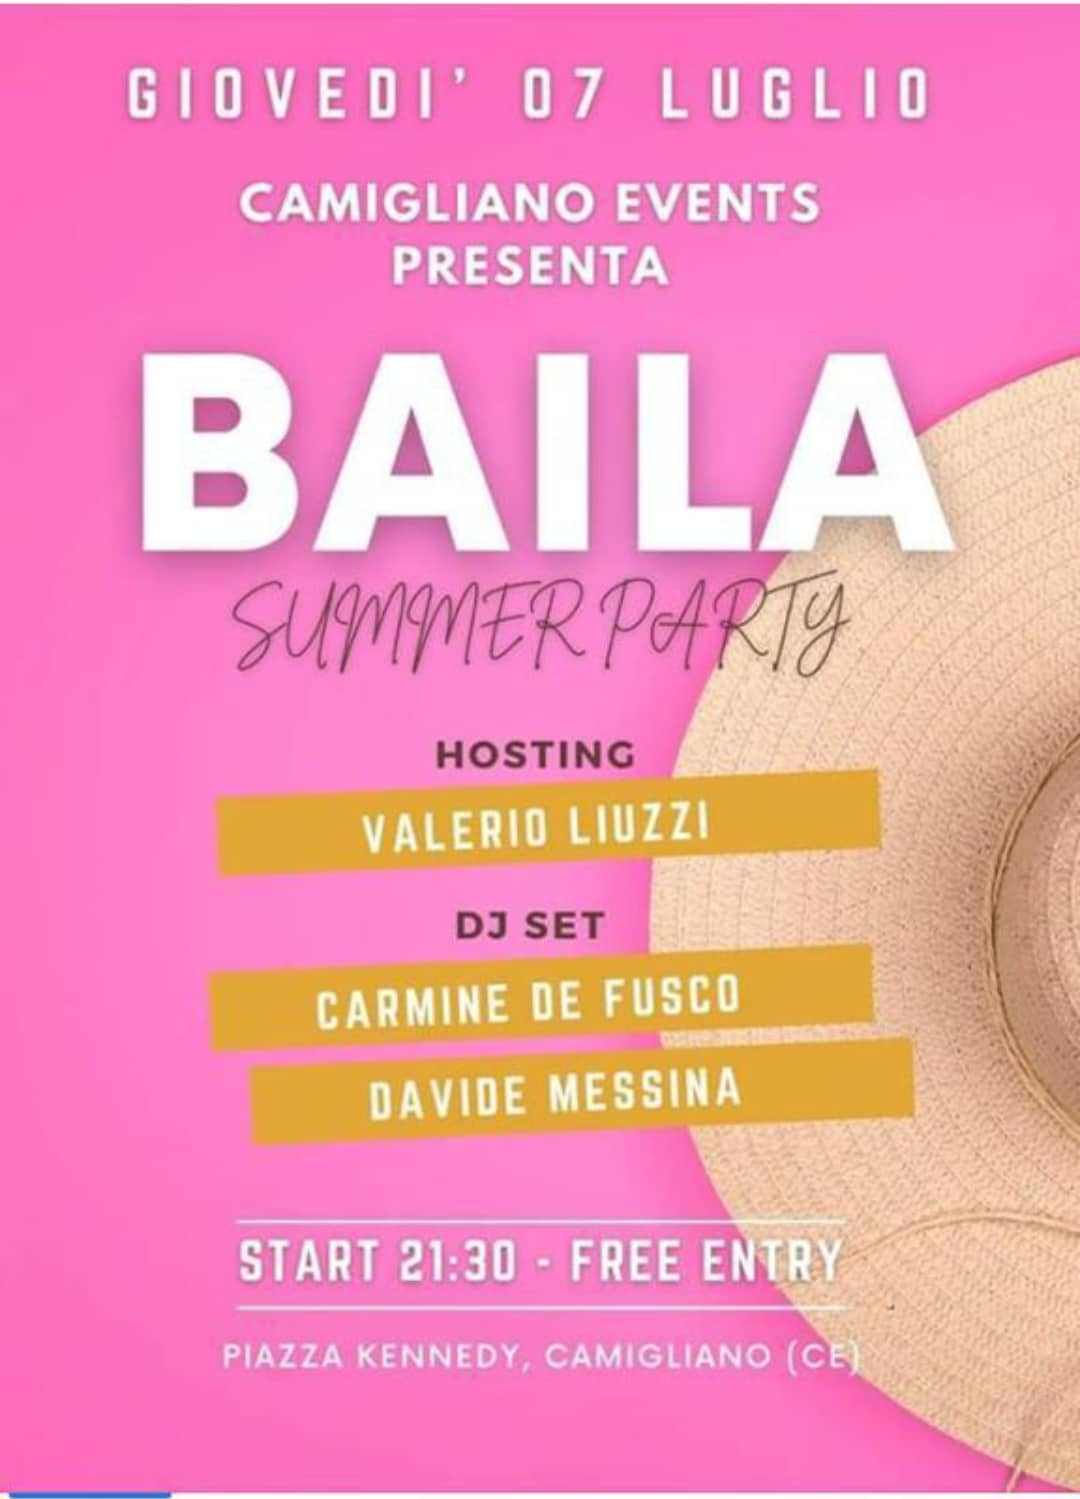 Camigliano (CE)
"BAILA - Summer Party"
7 Luglio 2022